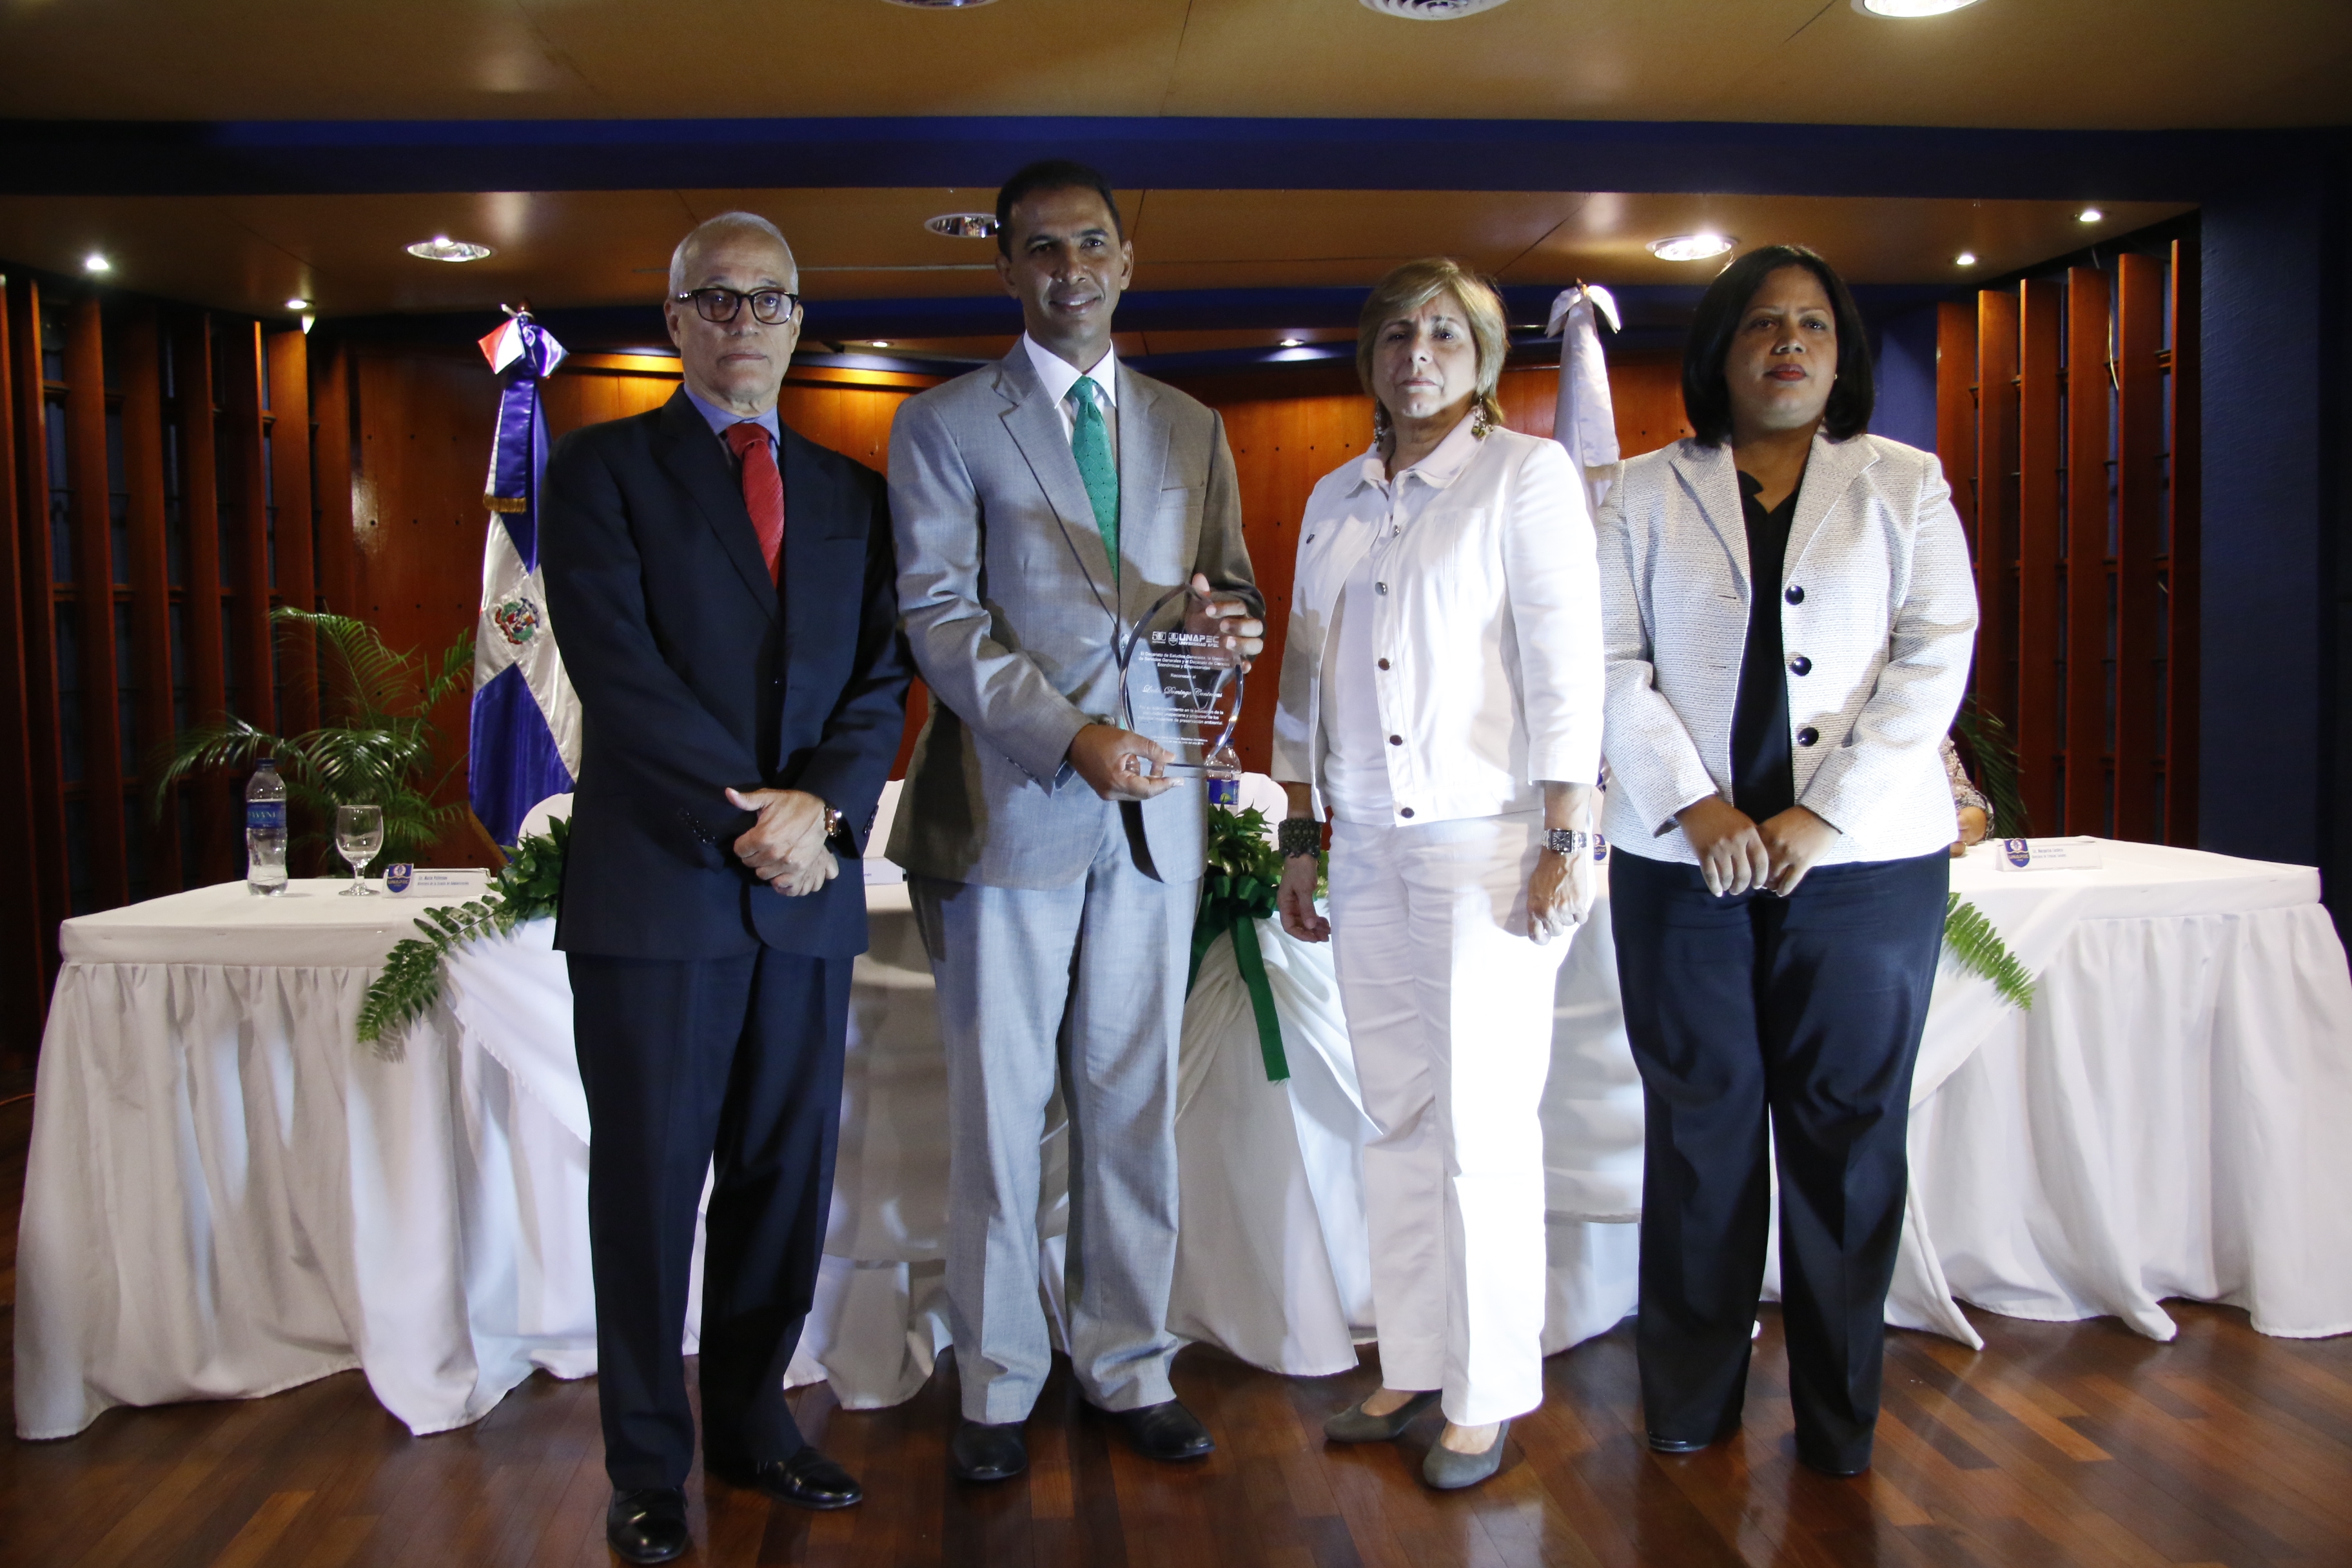 Domingo Contreras recibió la placa de reconocimiento de manos del Dr. Andrés L. Mateo, María Pellerano y Eveliny Alcántara.